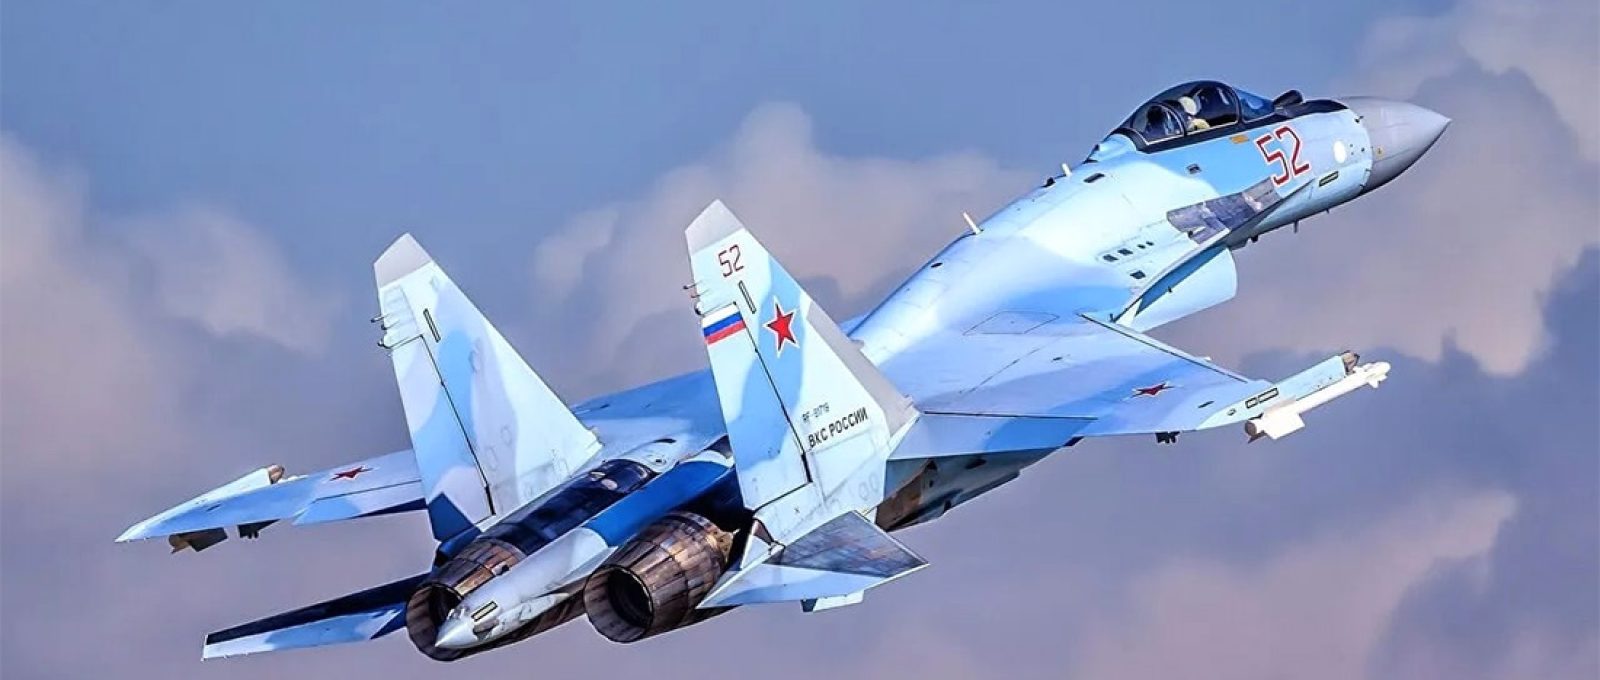 Caça Sukhoi Su-35 da Força Aérea Russa (Creative Commons).